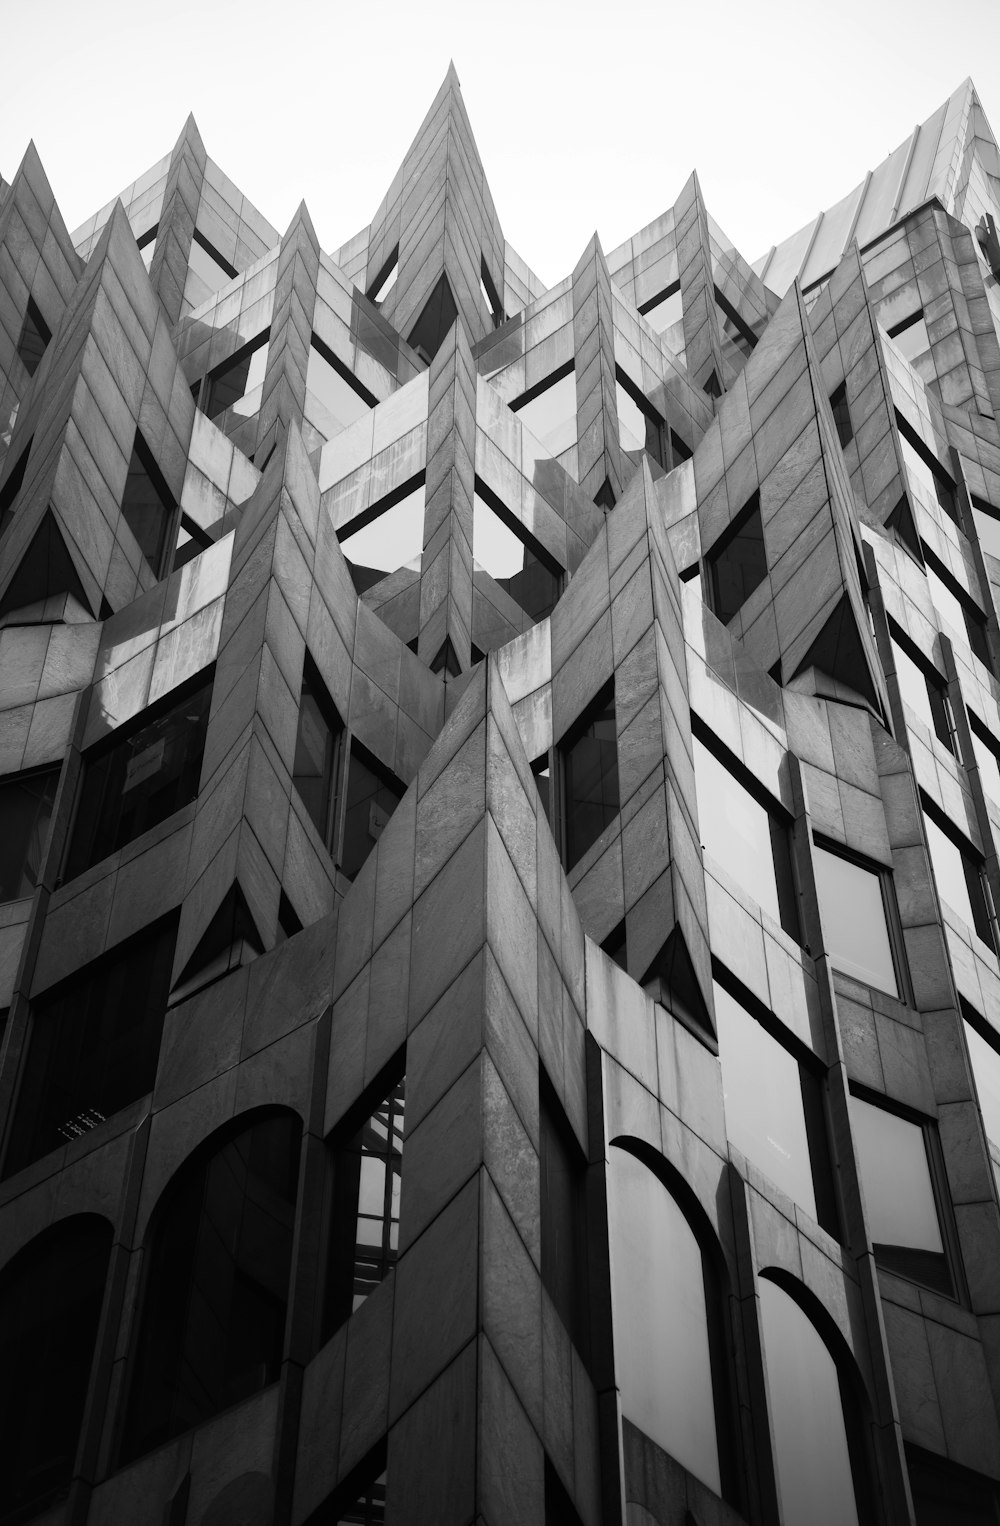 콘크리트 구조물의 회색조 사진